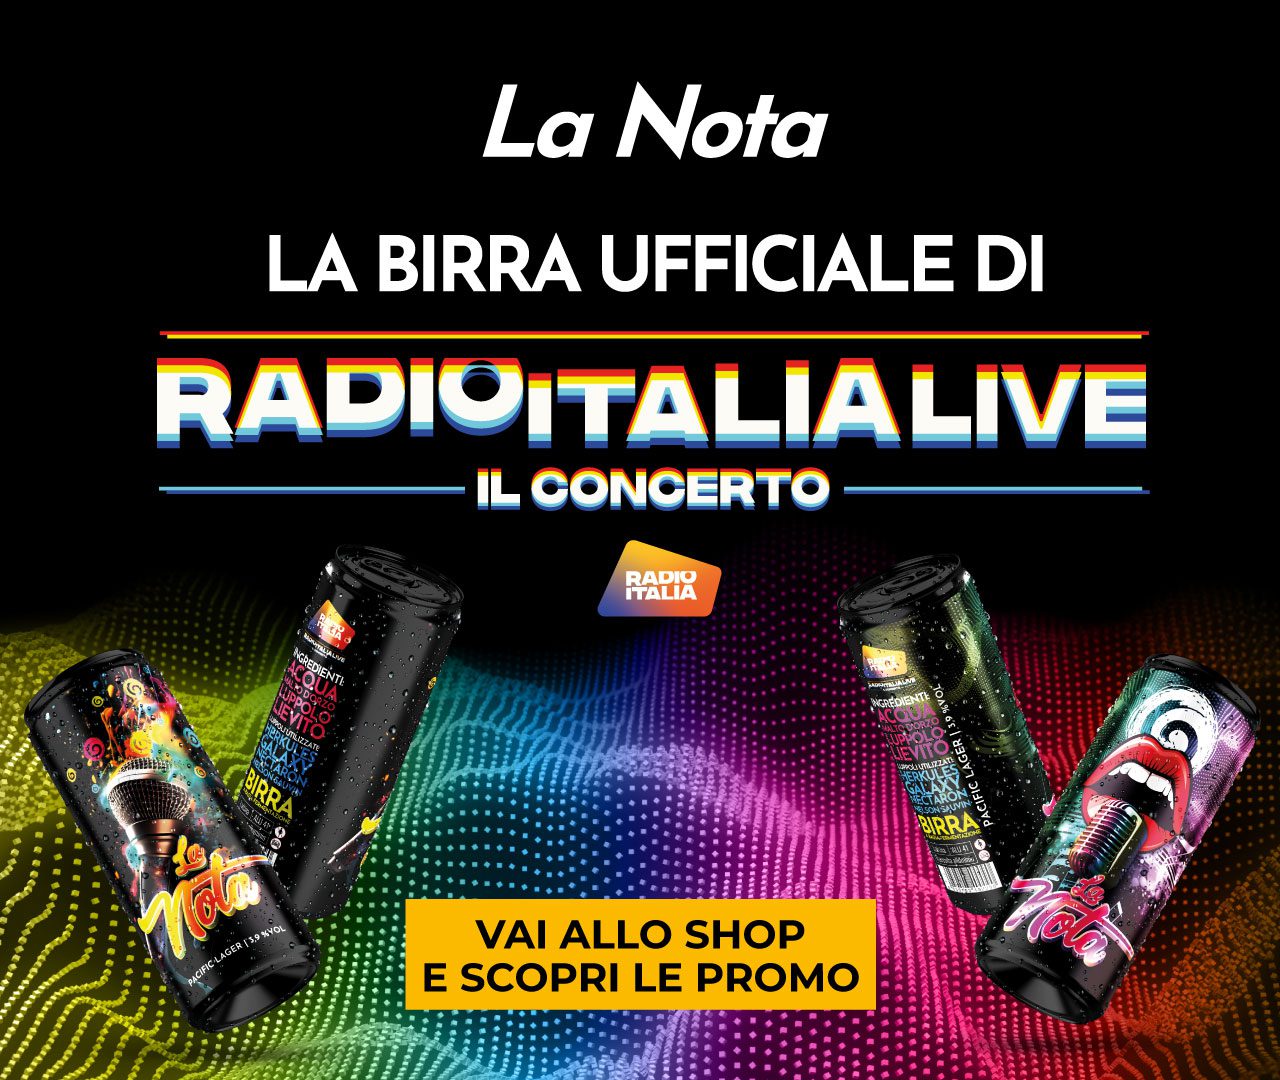 La Nota birra ufficiale Radio Italia - il concerto